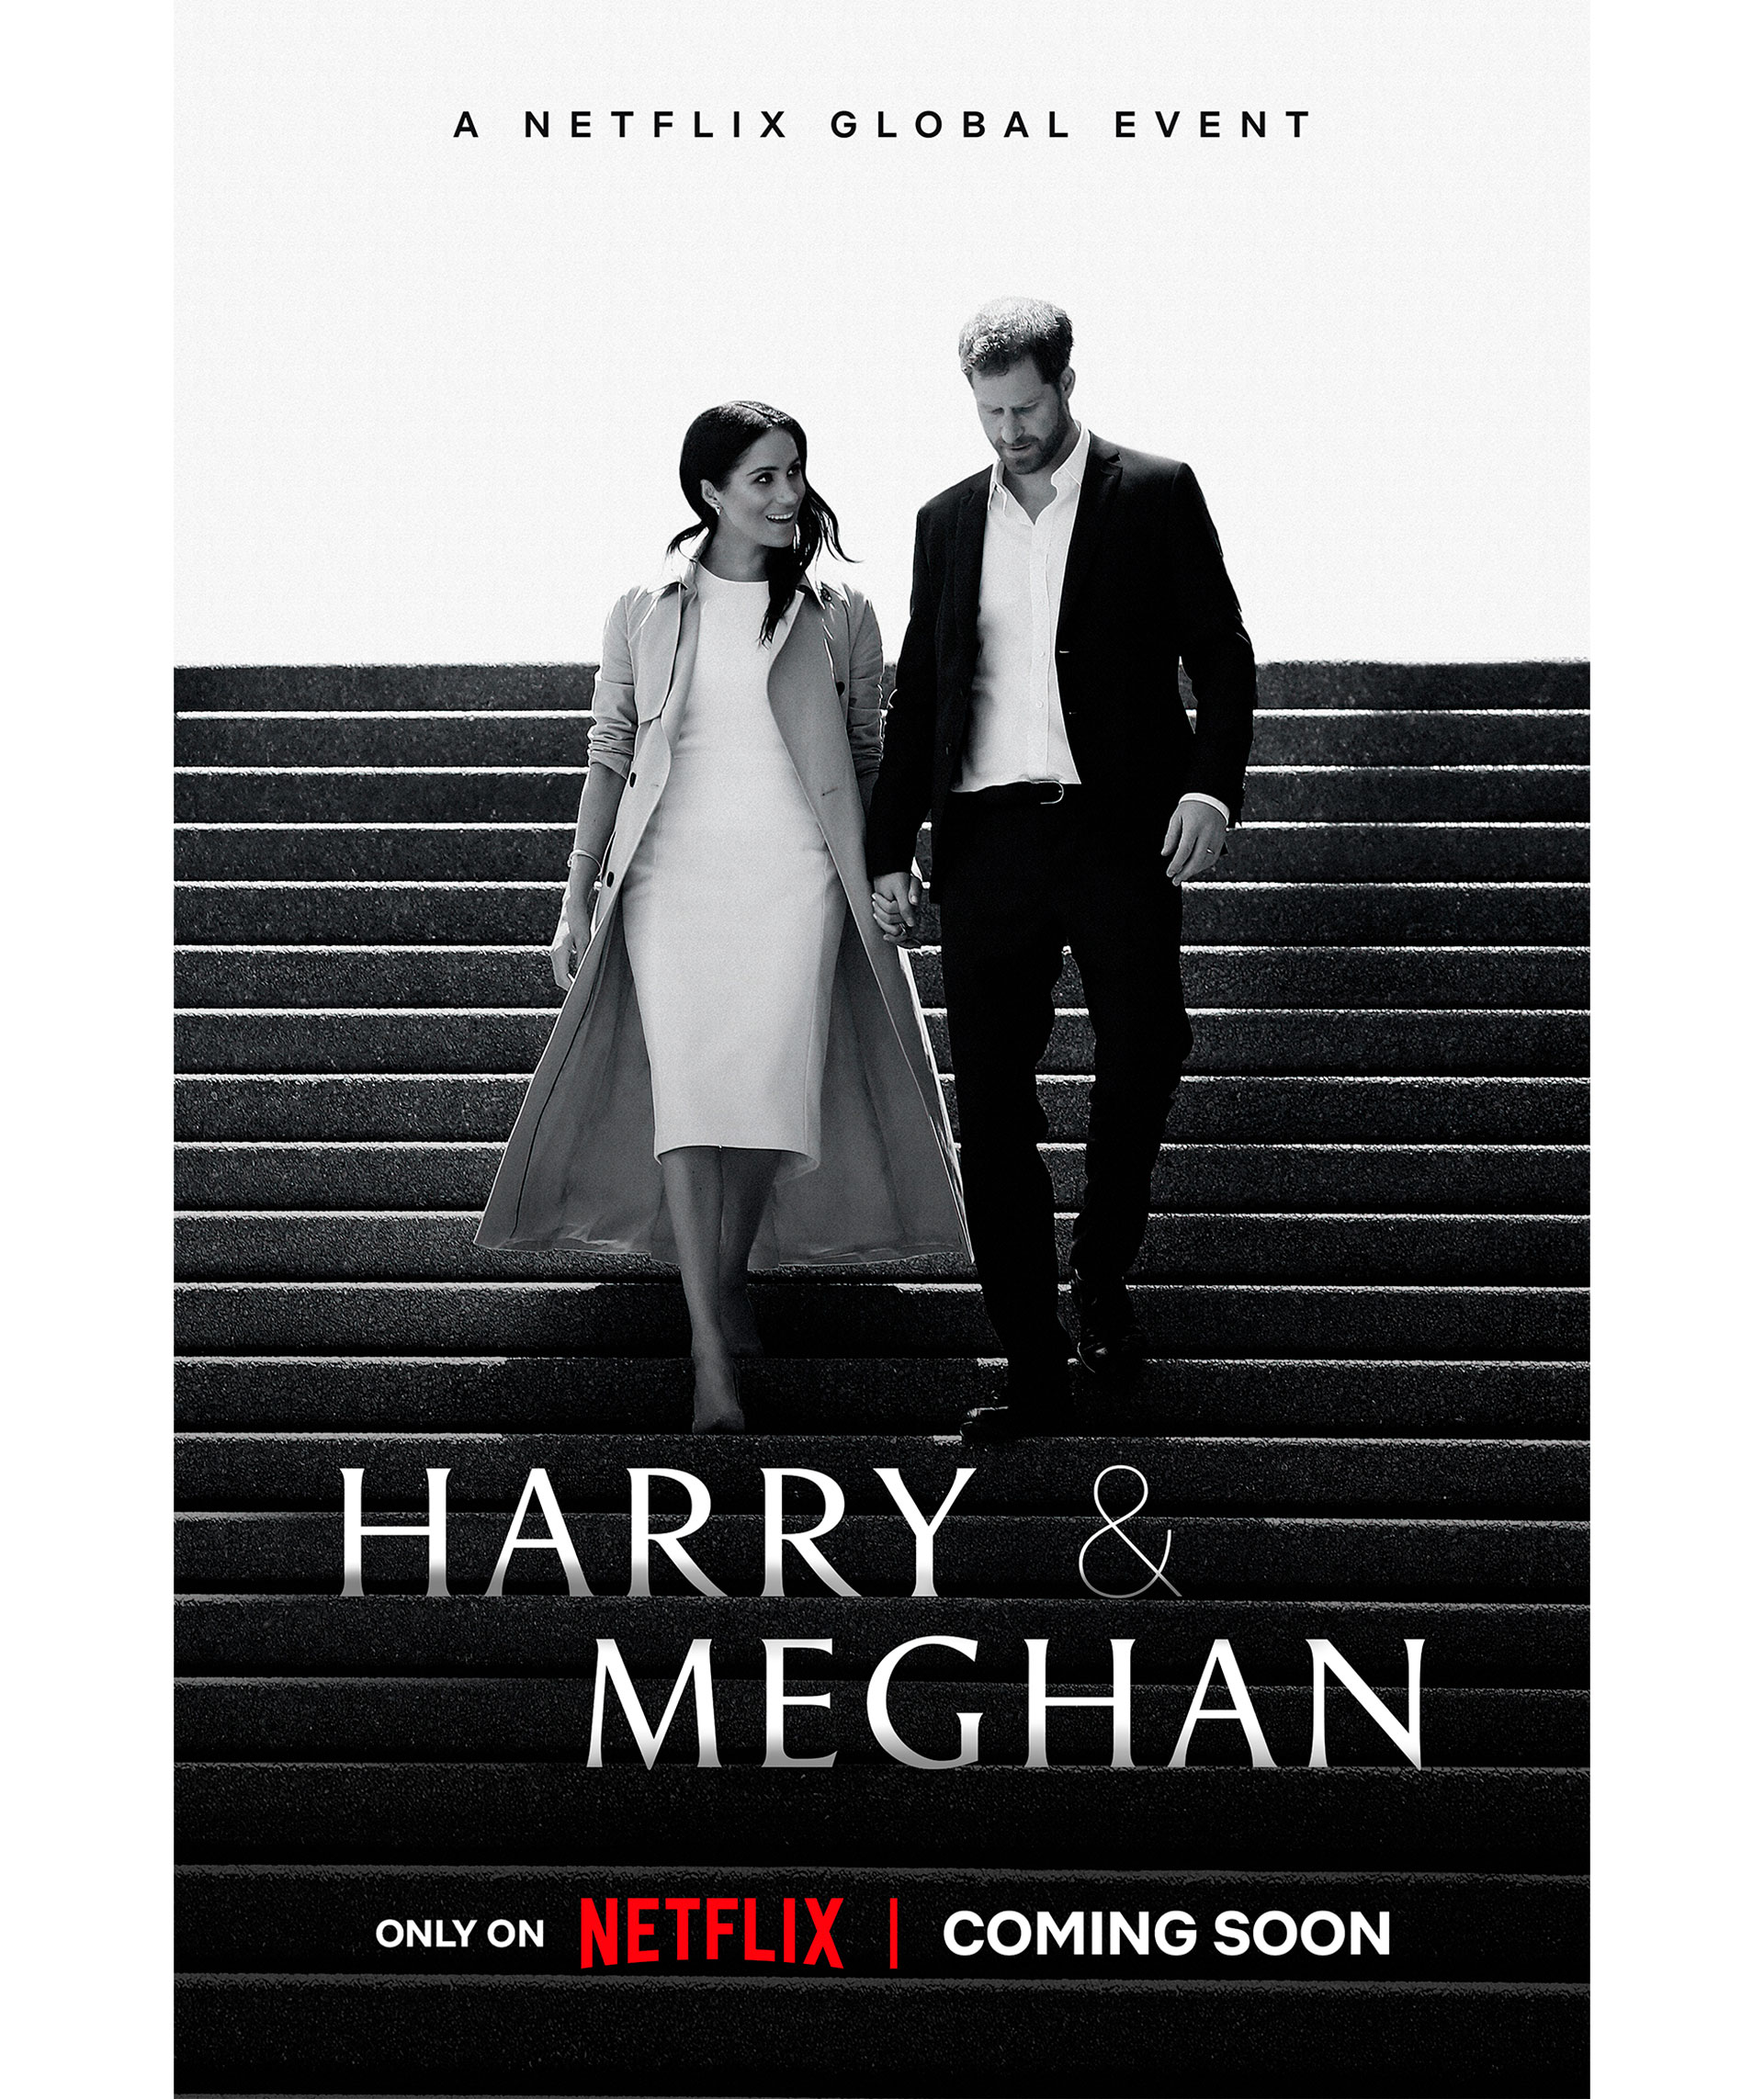 Esta imagen publicada por Netflix muestra el arte promocional del próximo documental "Harry & Meghan", dirigido por Liz Garbus. (Netflix vía AP)

